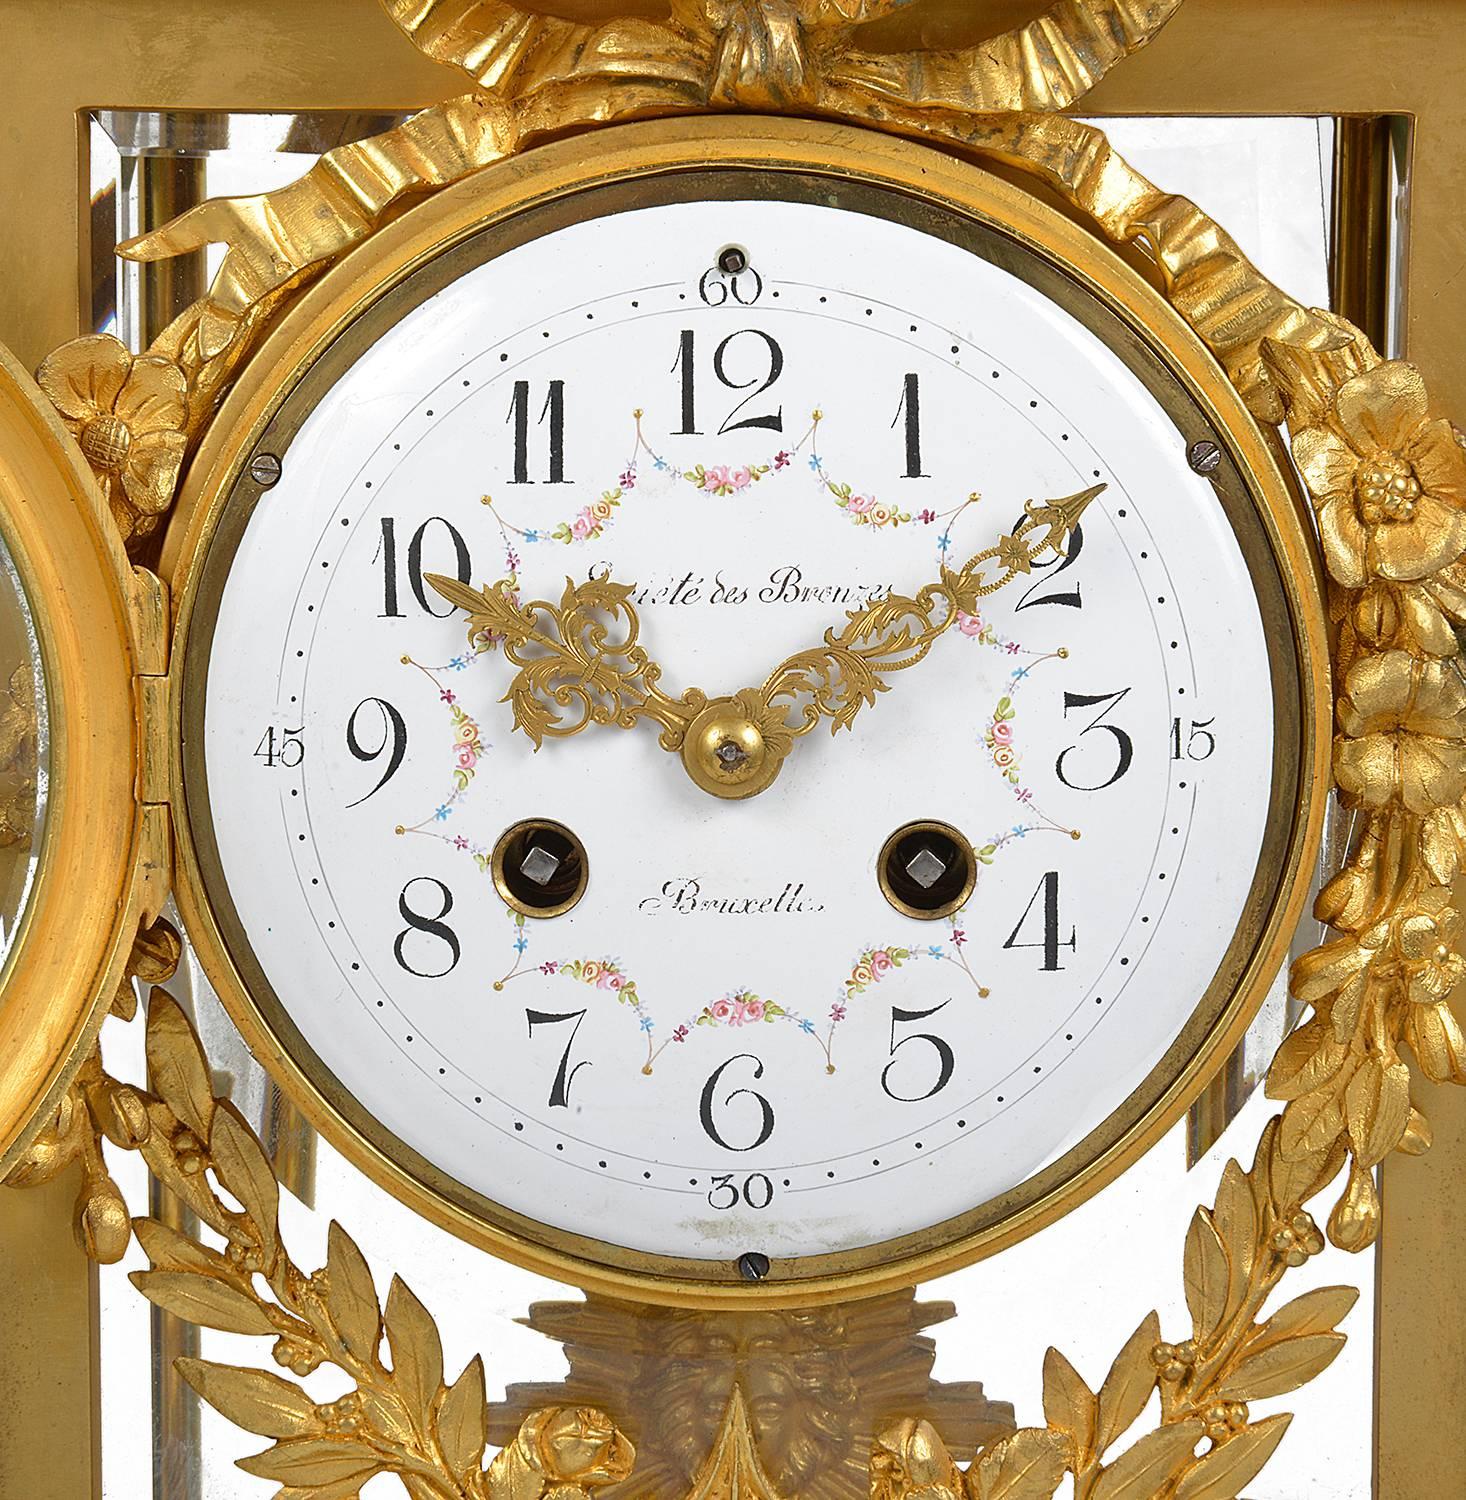 Eine gute Qualität 19. Jahrhundert Französisch vergoldet, Louis XVI-Stil Ormolu Mantel Uhr. Mit einem vergoldeten Kranz und Pfeilscheide über einer weißen Marmorplatte, Ormolu vier Glas Gehäuse, mit einem weißen Emaille Zifferblatt, ein acht Tage